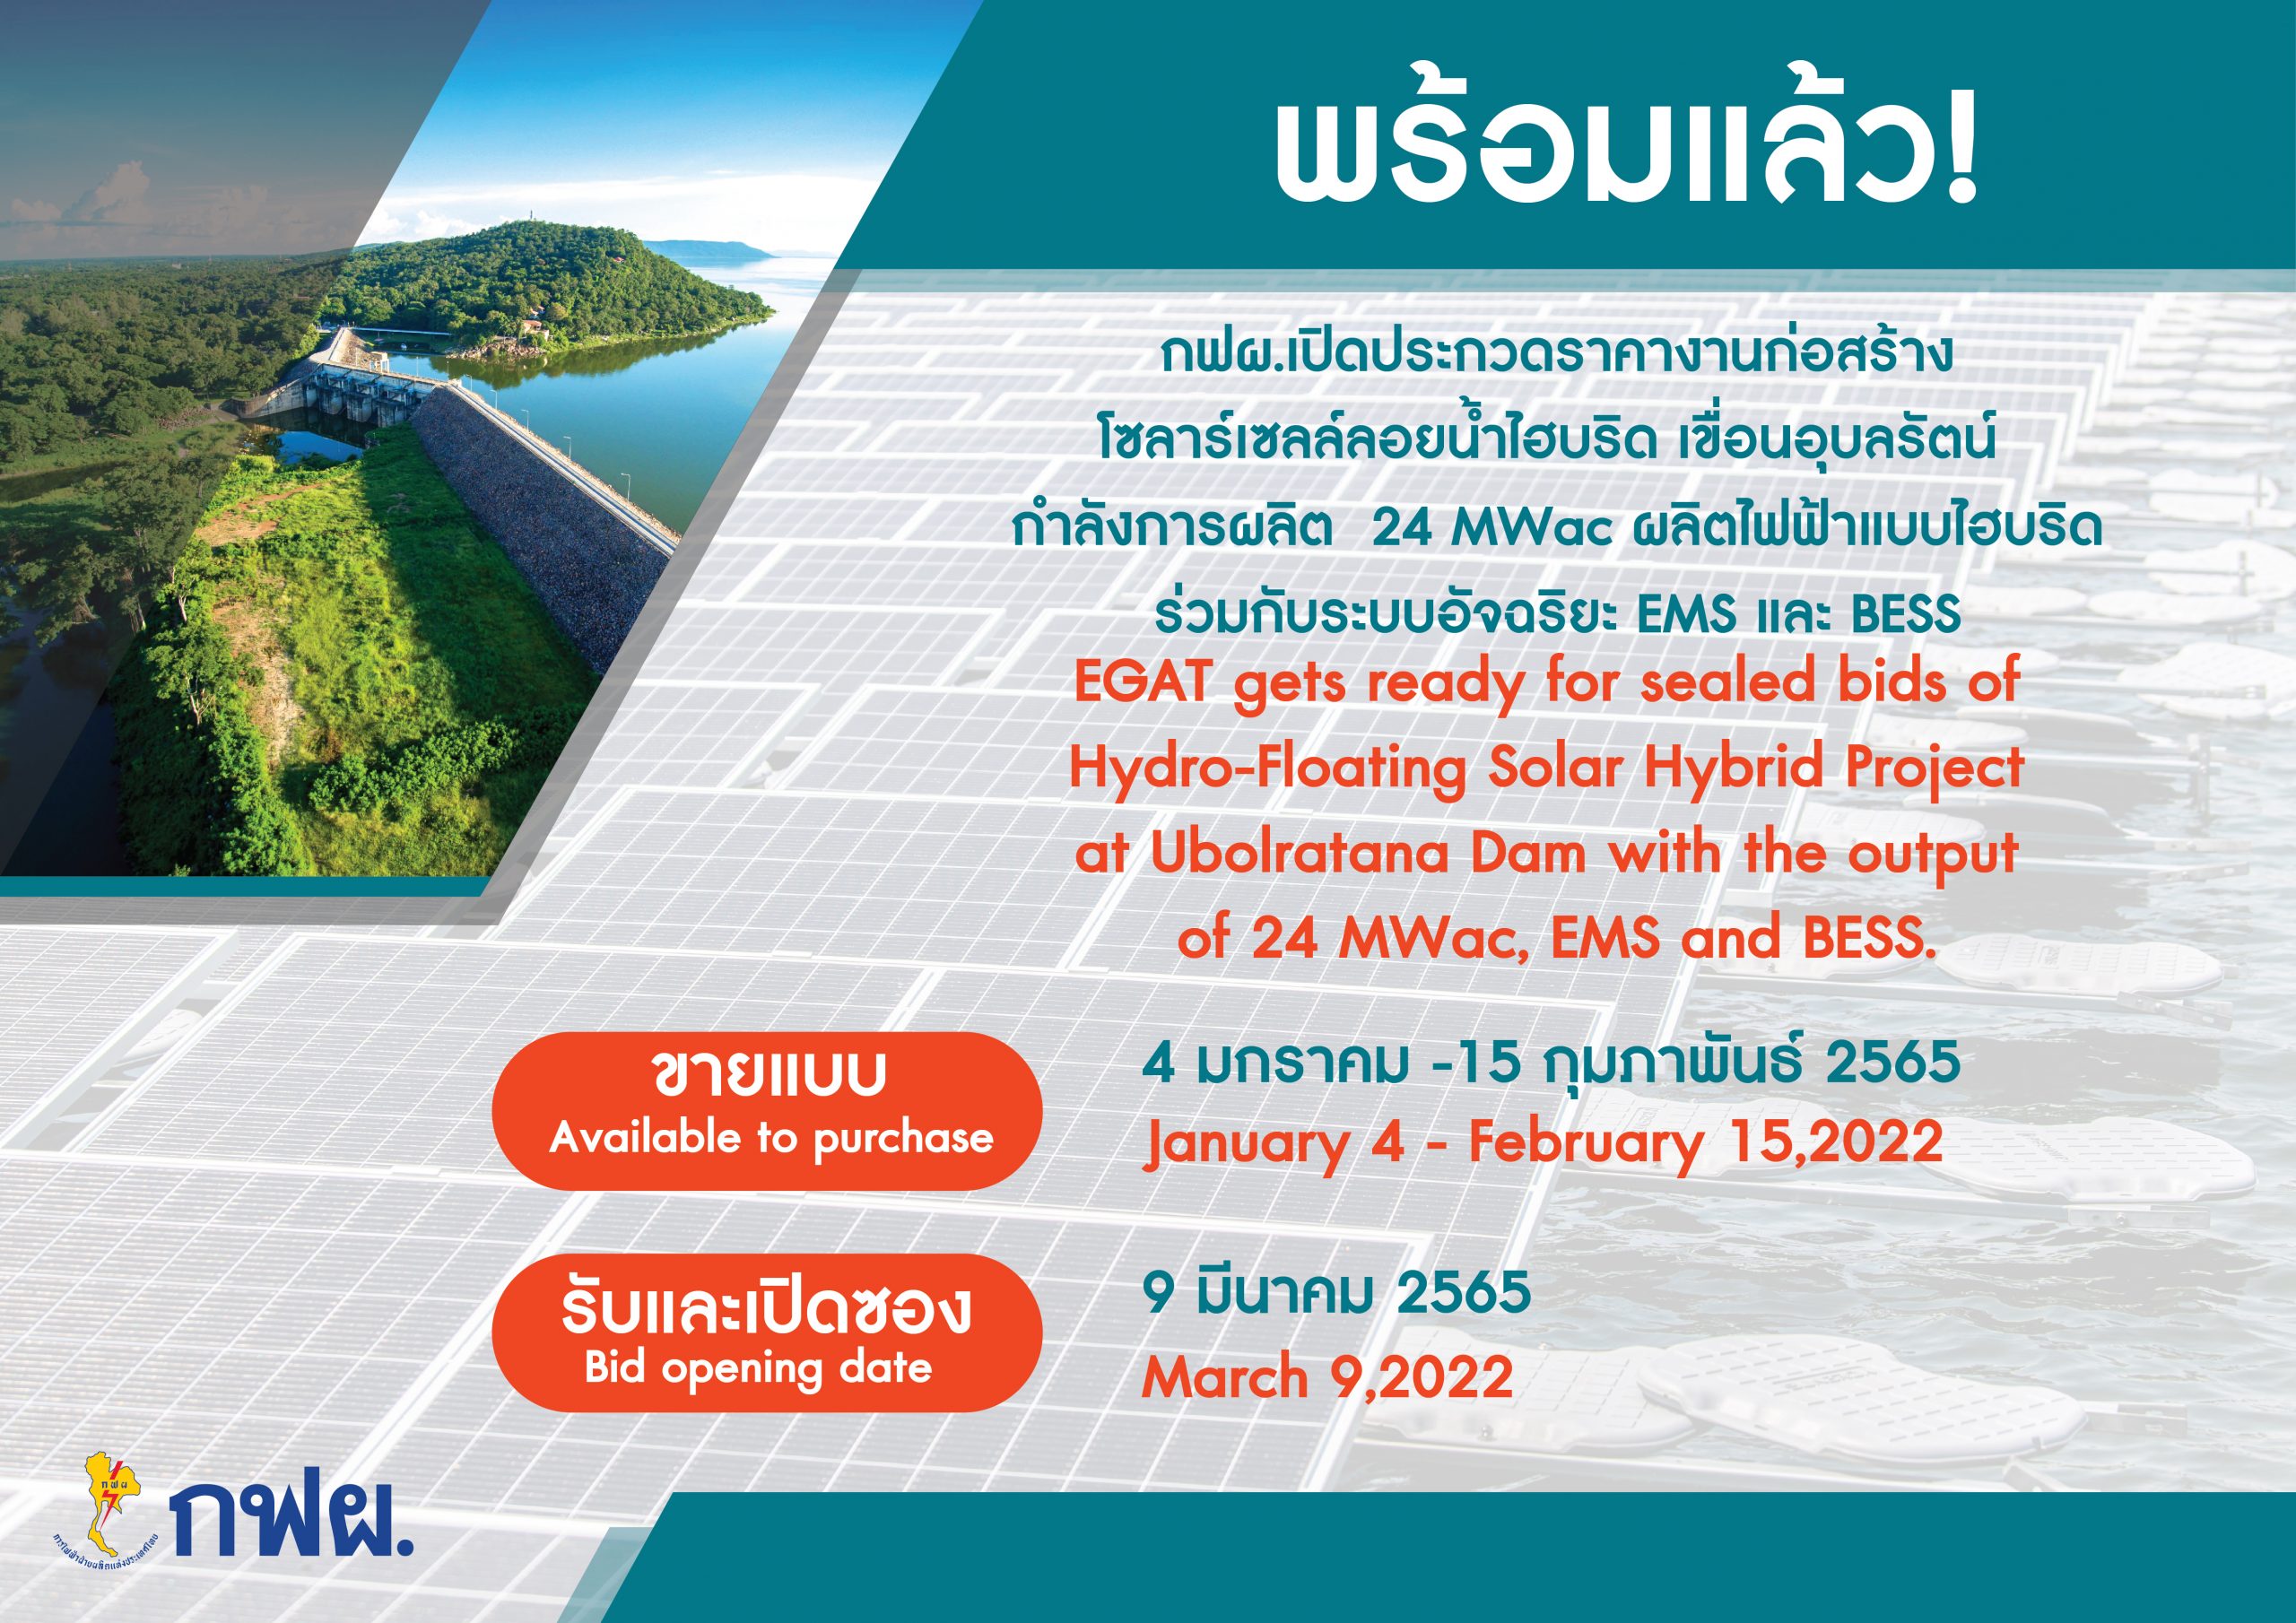 泰国国家电力局竭力为泰国人民提供清洁电力能源，计划于2022年1月启售乌本拉水库混合浮动太阳能电池板项目竞标书。